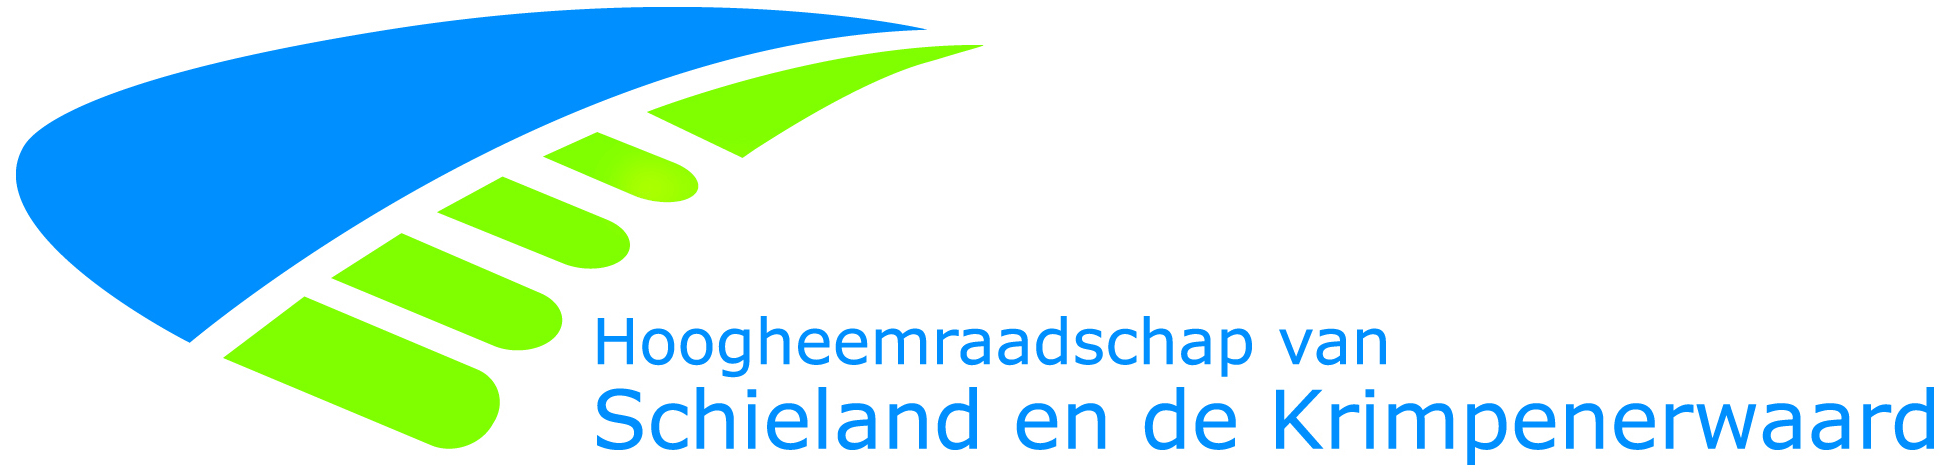 logo Hoogheemraadschap Schieland en de Krimpenerwaard